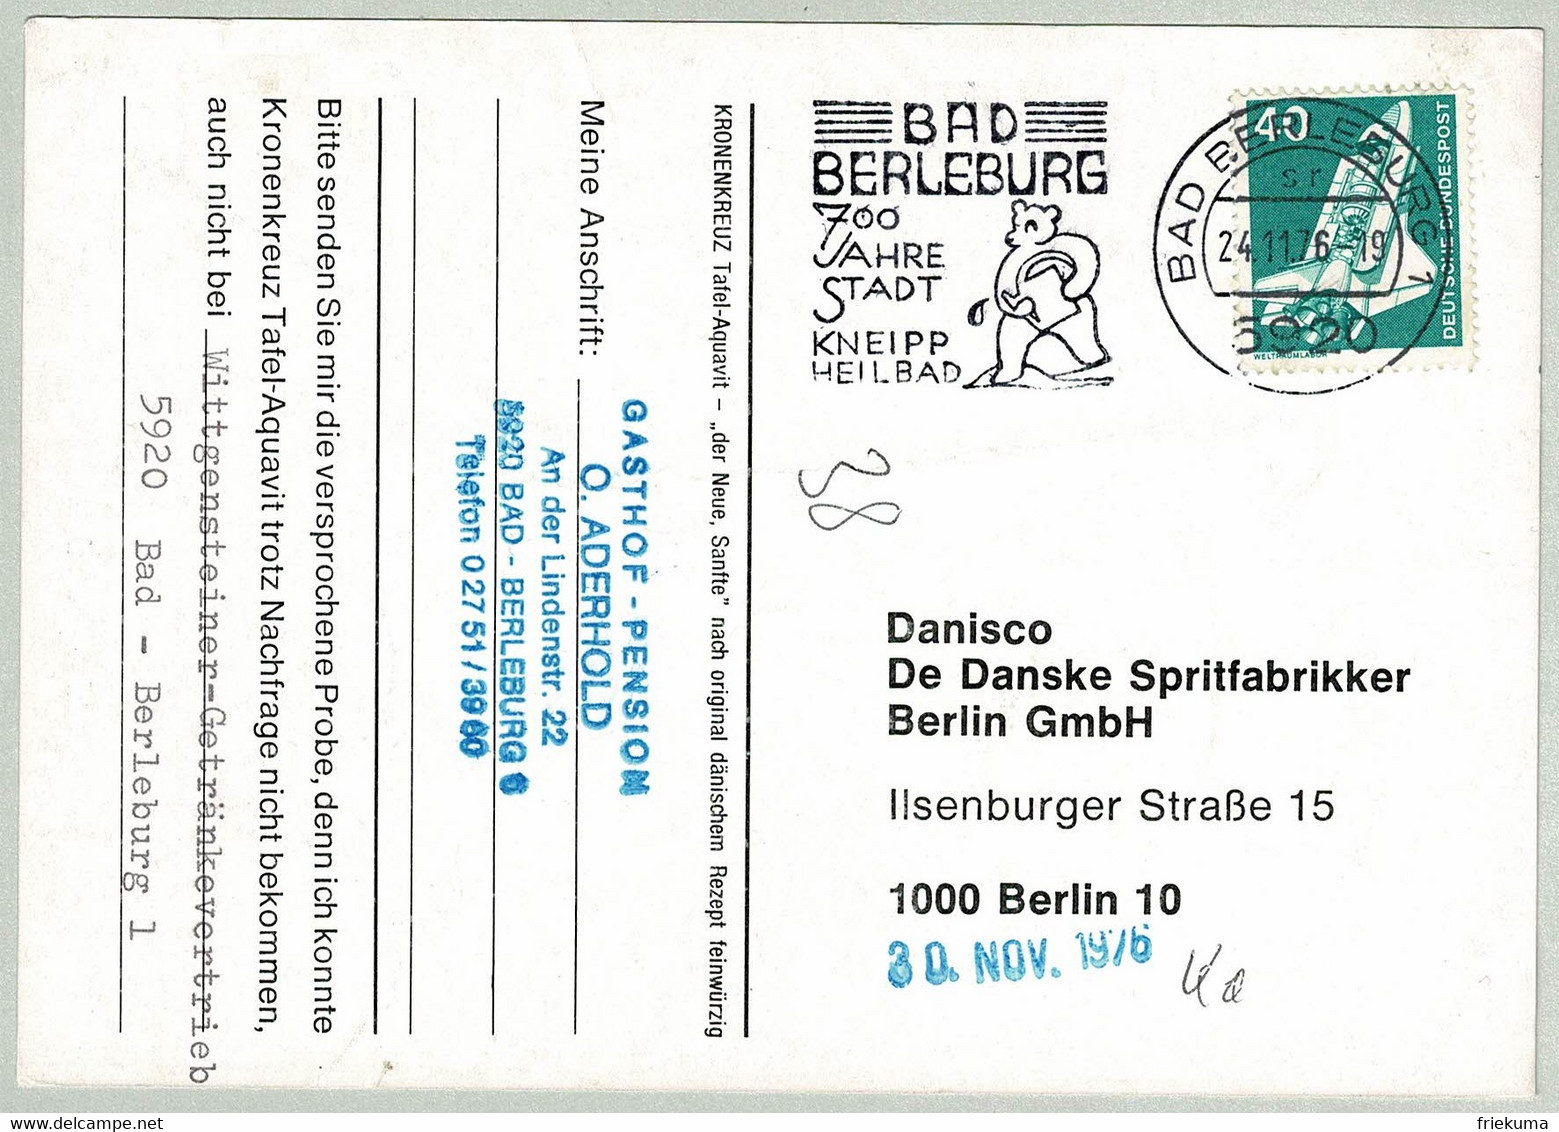 Deutsche Bundespost 1976, Postkarte Bad Berleburg - Berlin, Kneipp, Baumaschine/Construction Machine, Bär/Bear - Bäderwesen